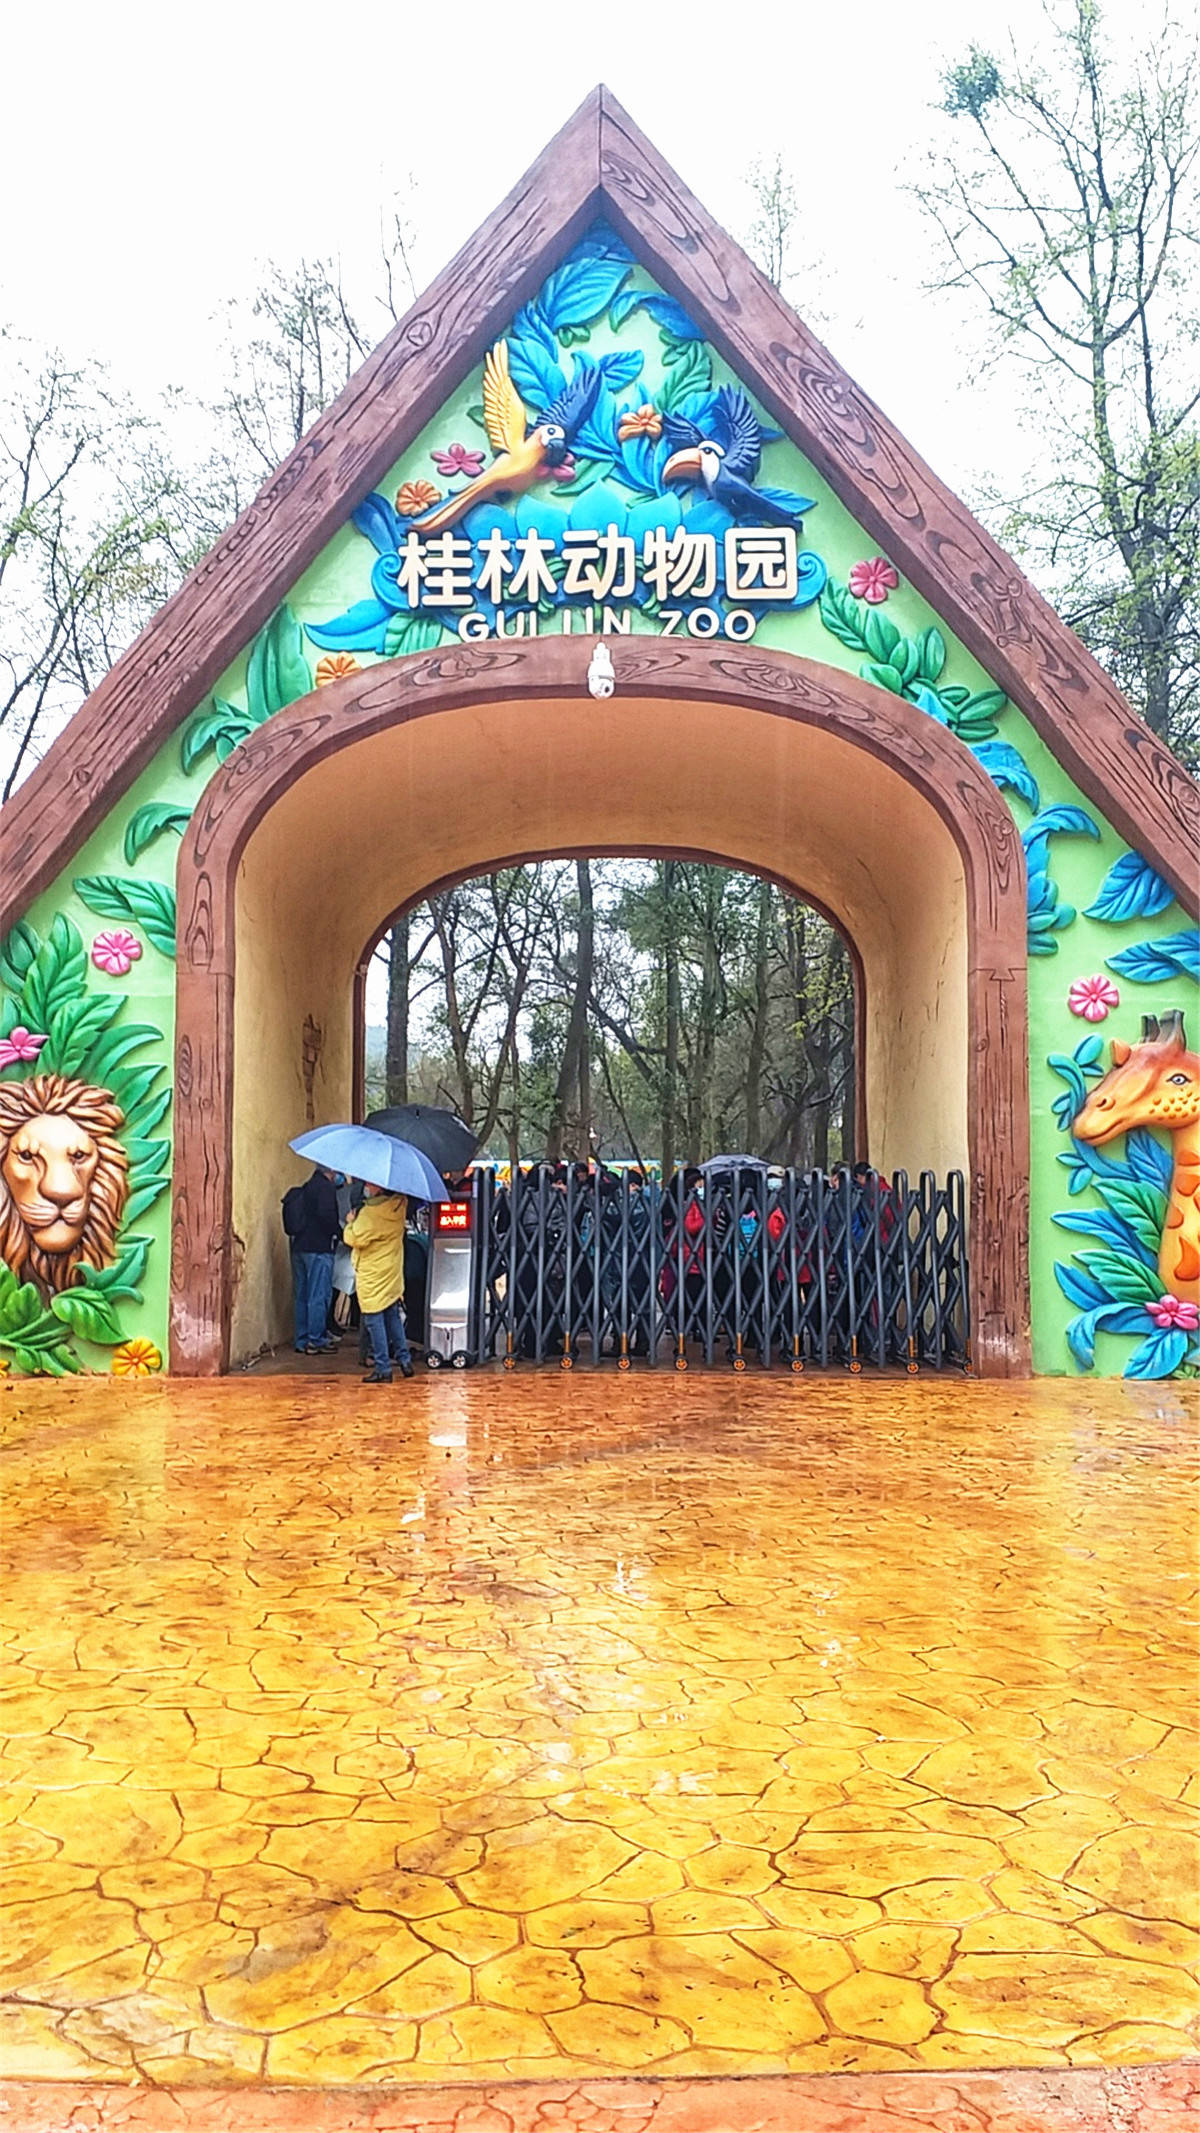 原创桂林新动物园里那些可爱的小动物们